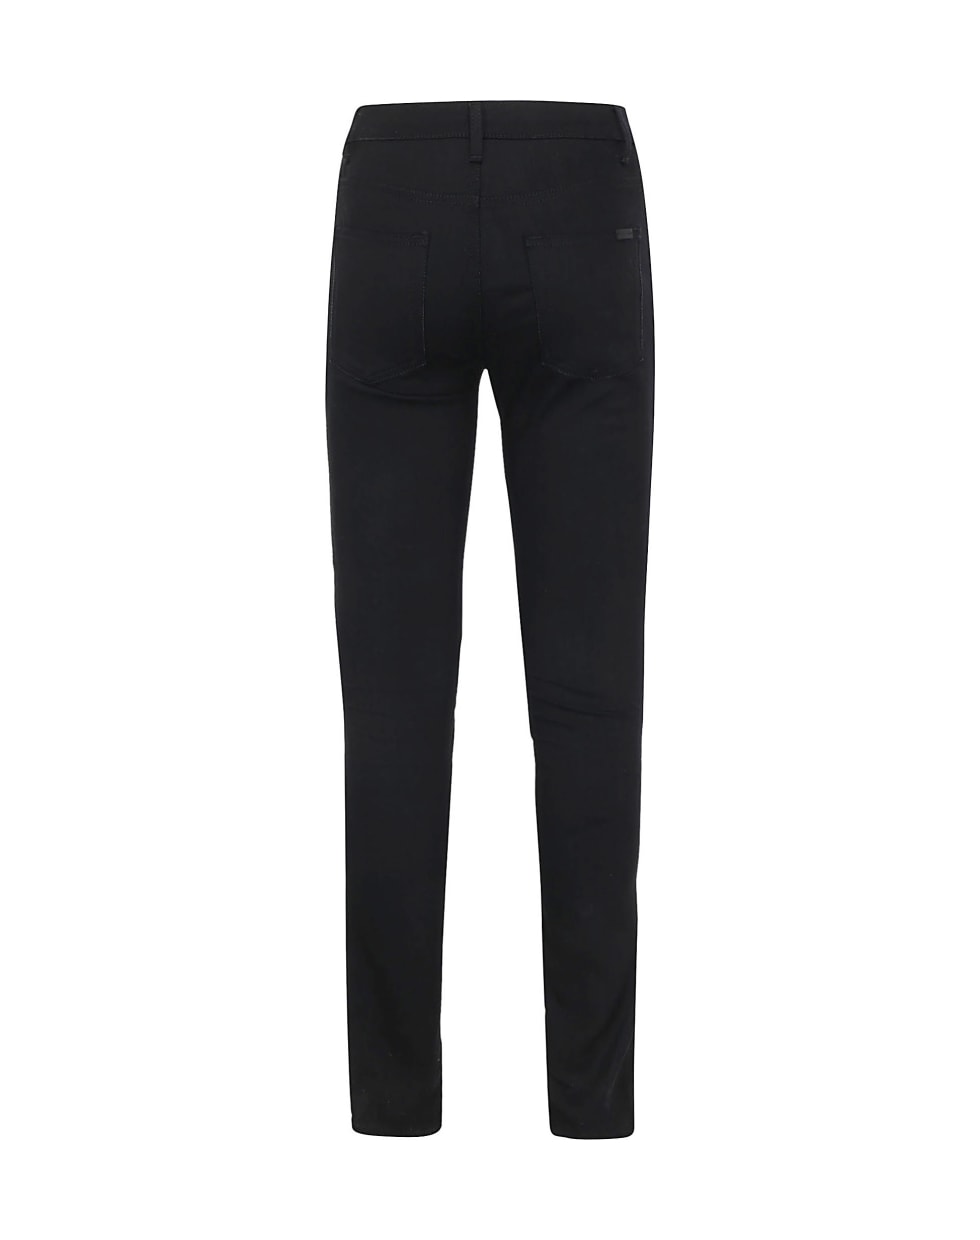 Saint Laurent Jeans - Used black